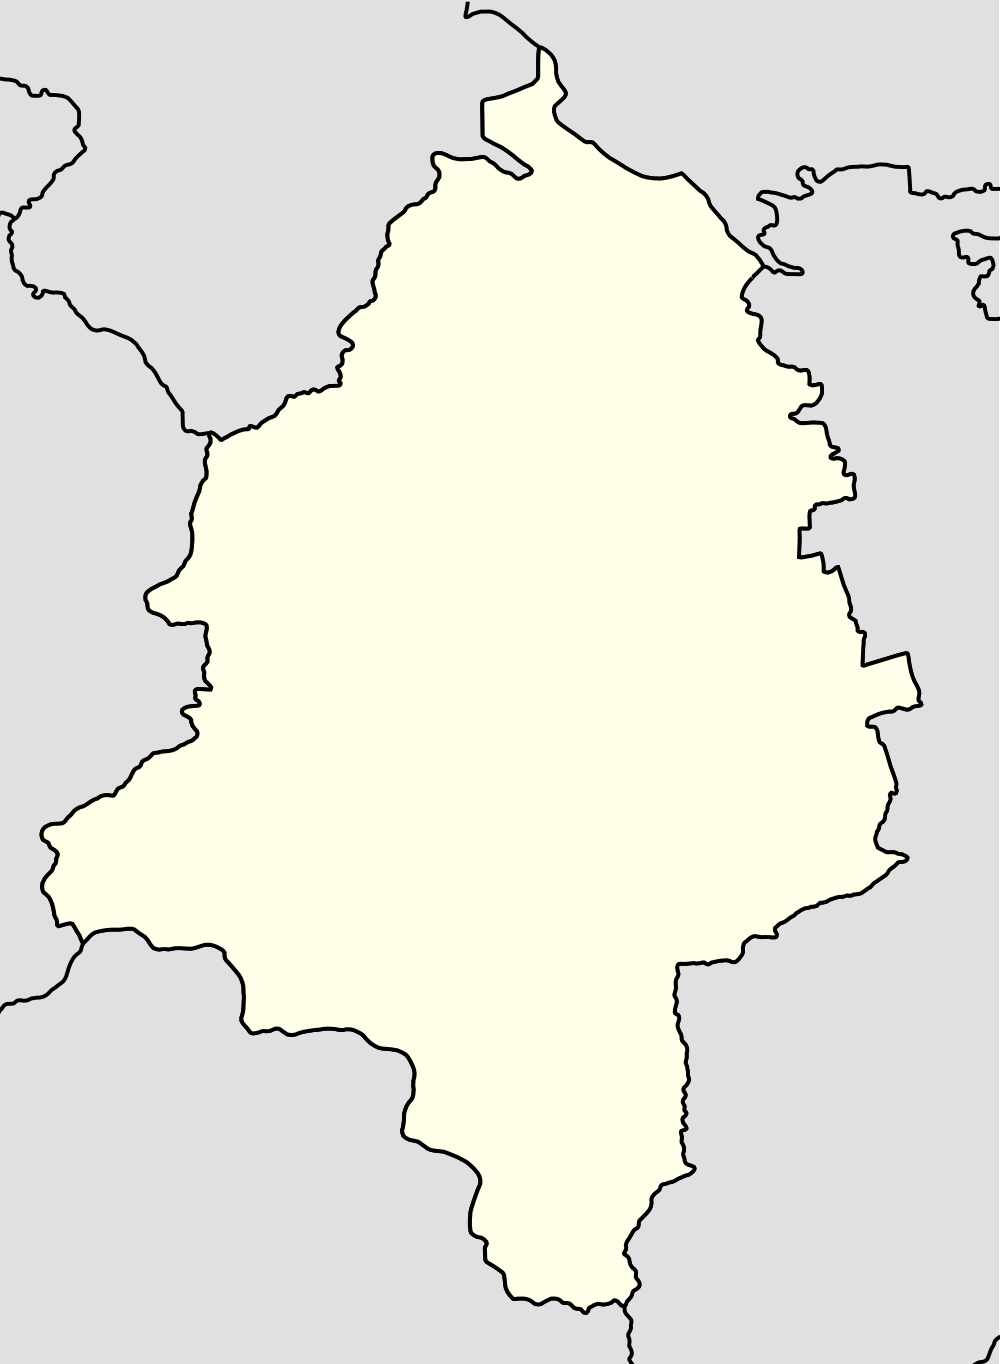 ხაშურის მუნიციპალიტეტის სოფლების სია — ხაშურის მუნიციპალიტეტი